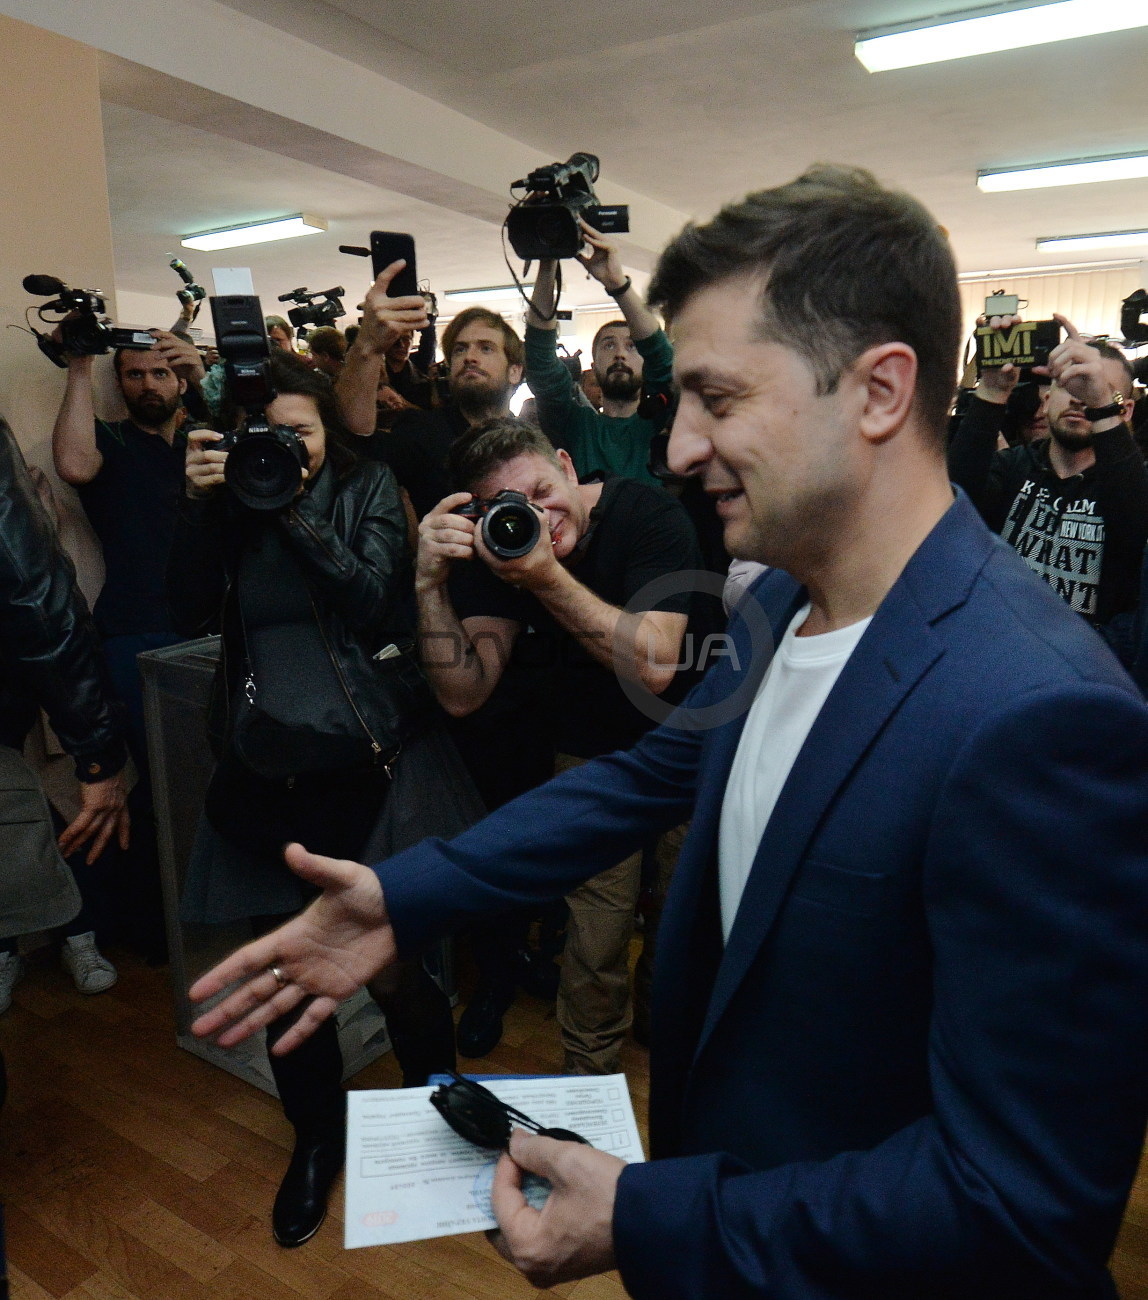 Владимир Зеленский проголосовал на избирательном участке в Оболонском районе Киева